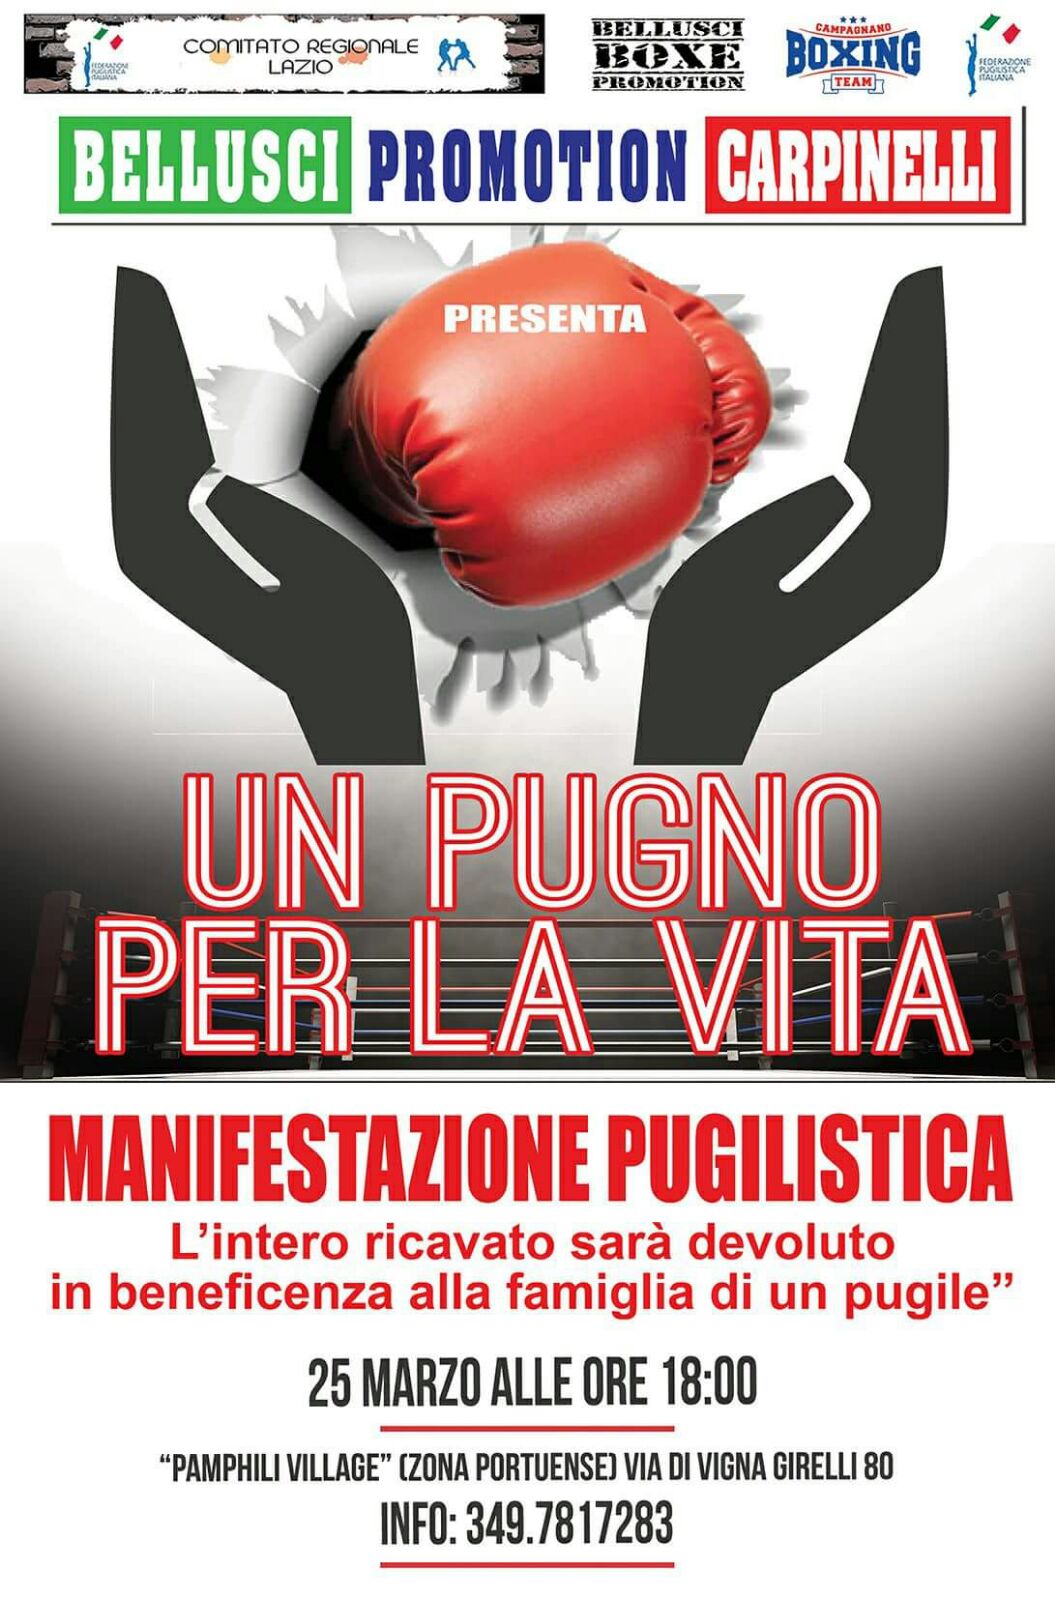 Domenica 25 Marzo a Roma Evento Benefico di Boxe firmato Bellusci Promotion Carpinelli 